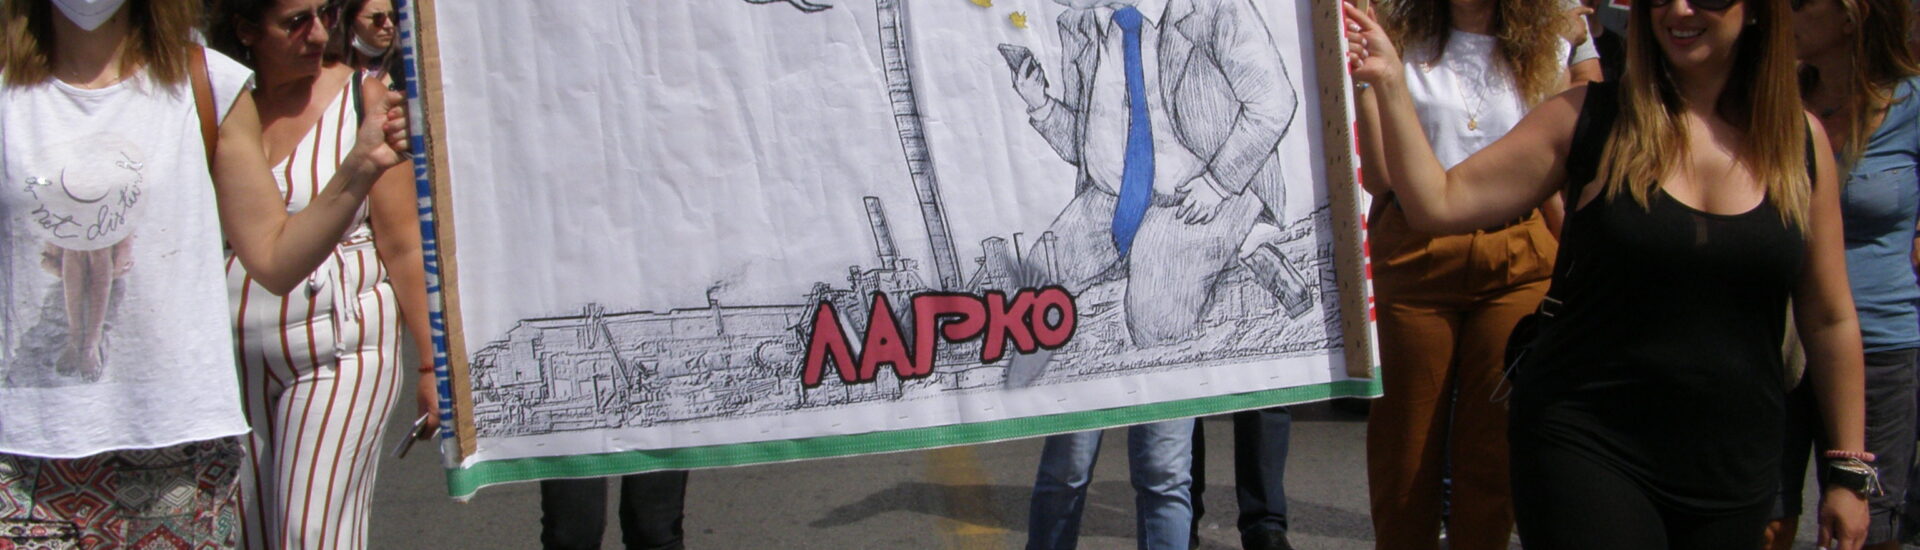 ΛΑΡΚΟ: Μαζική εργατική διαδήλωση & συναυλία στην Αθήνα